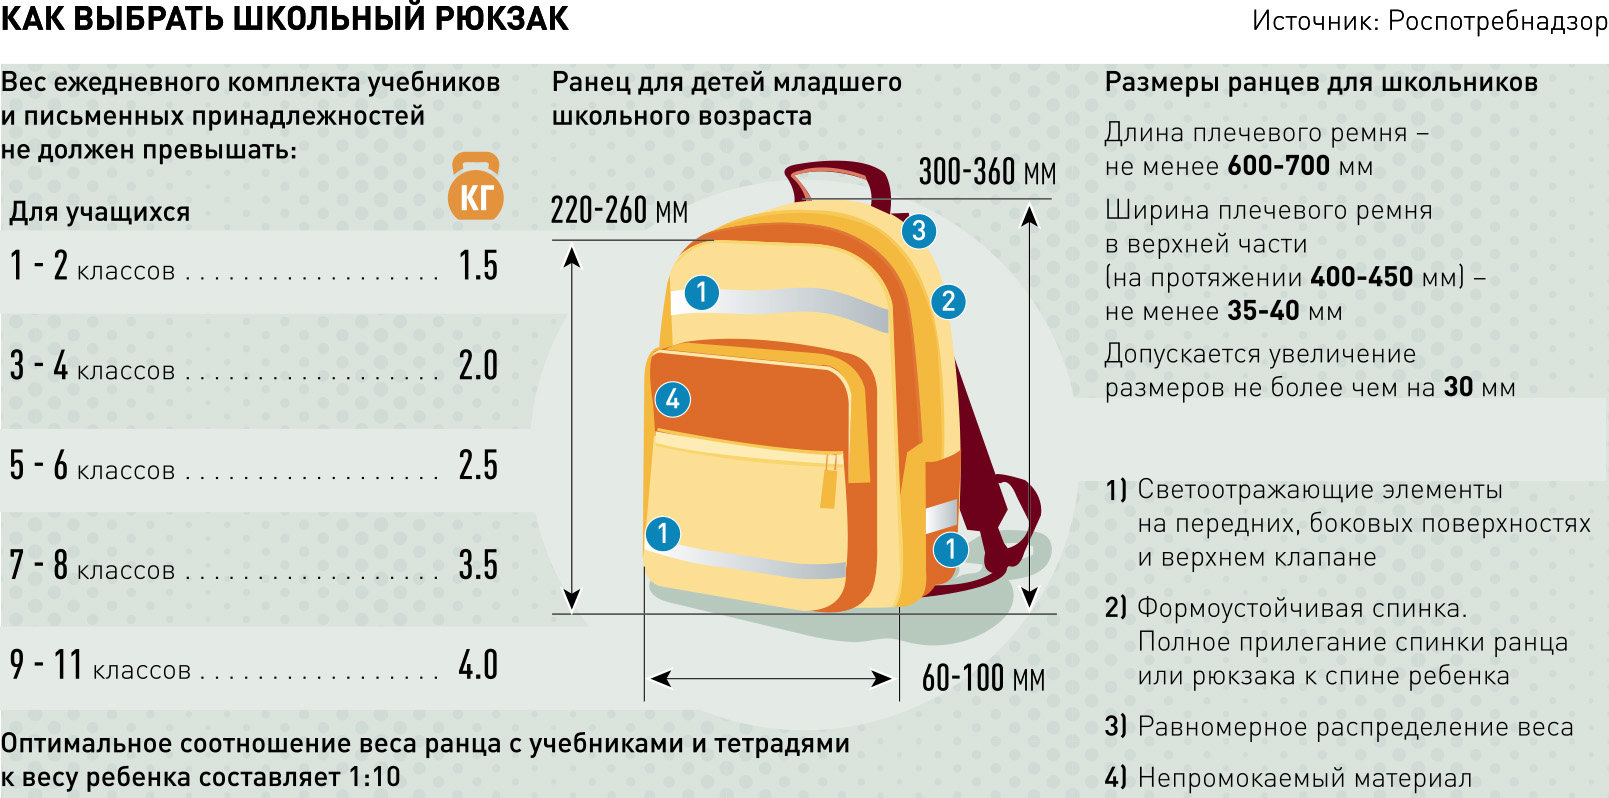 Как выбрать идеальный школьный рюкзак: Советы и отзывы родителей